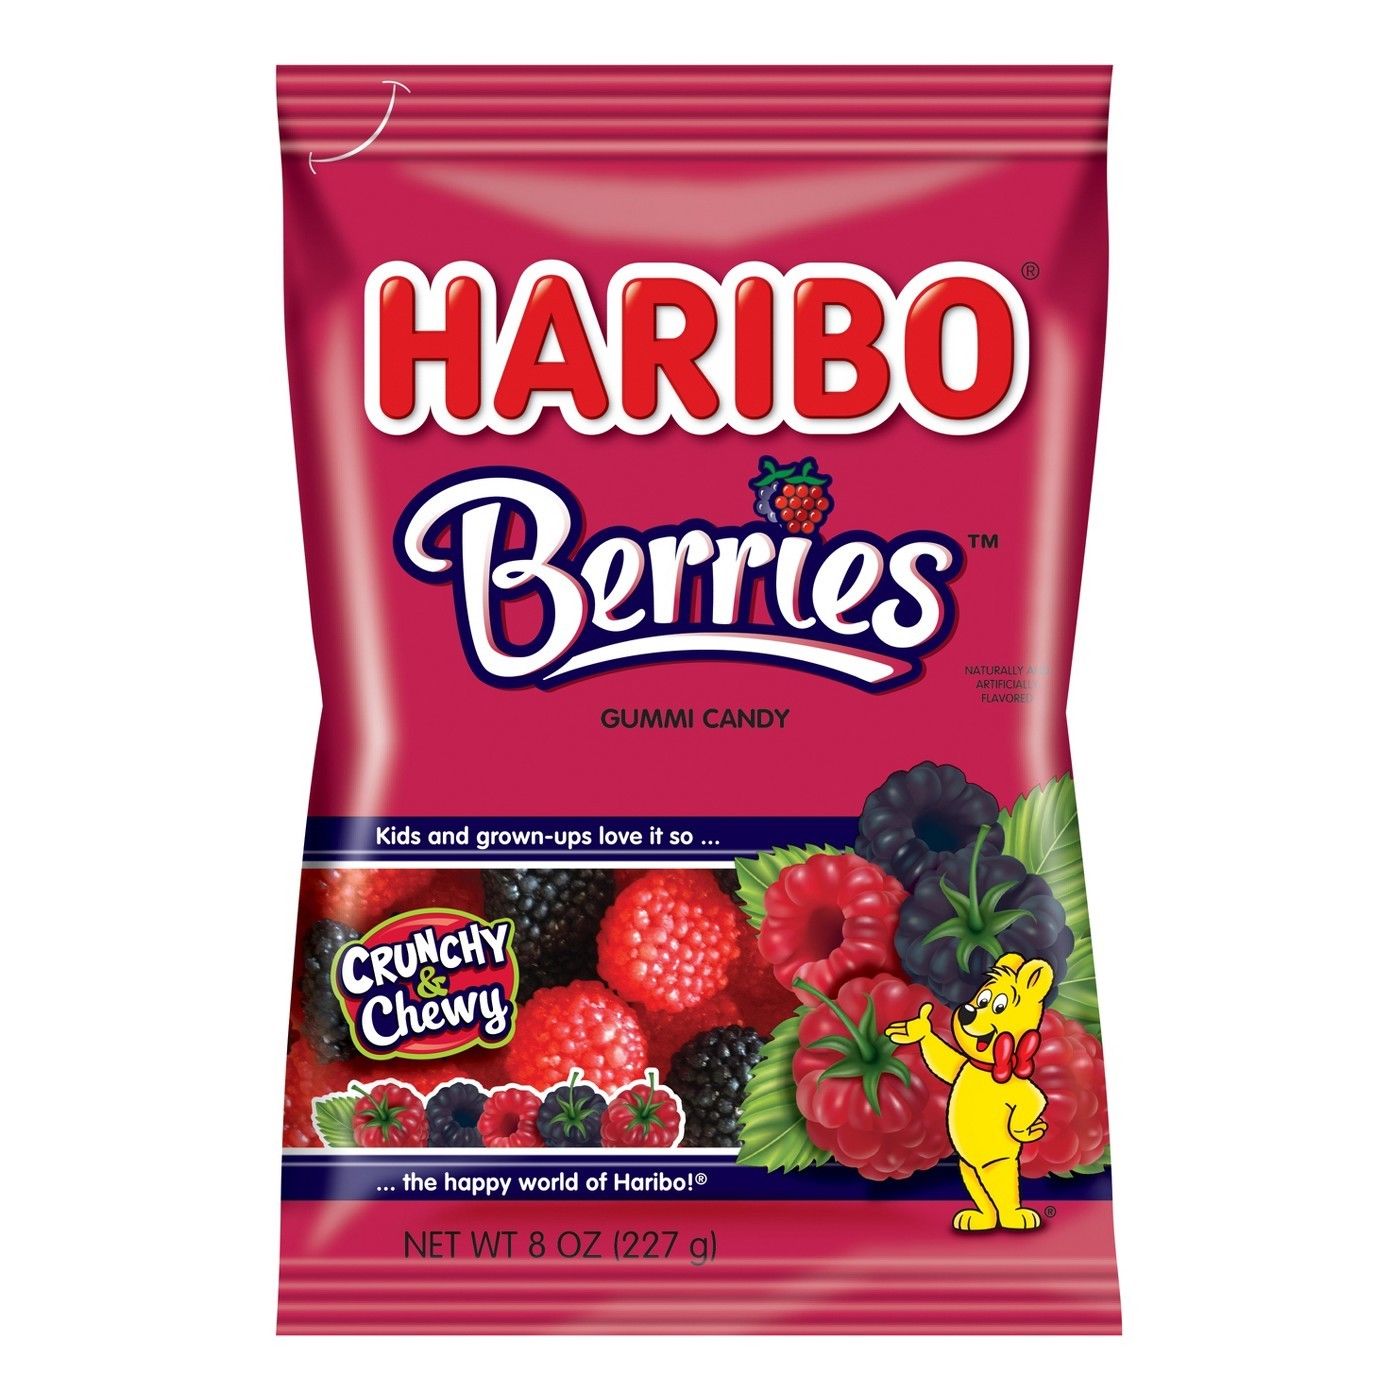 Haribo Berries Gummi Candy, 8oz Bag